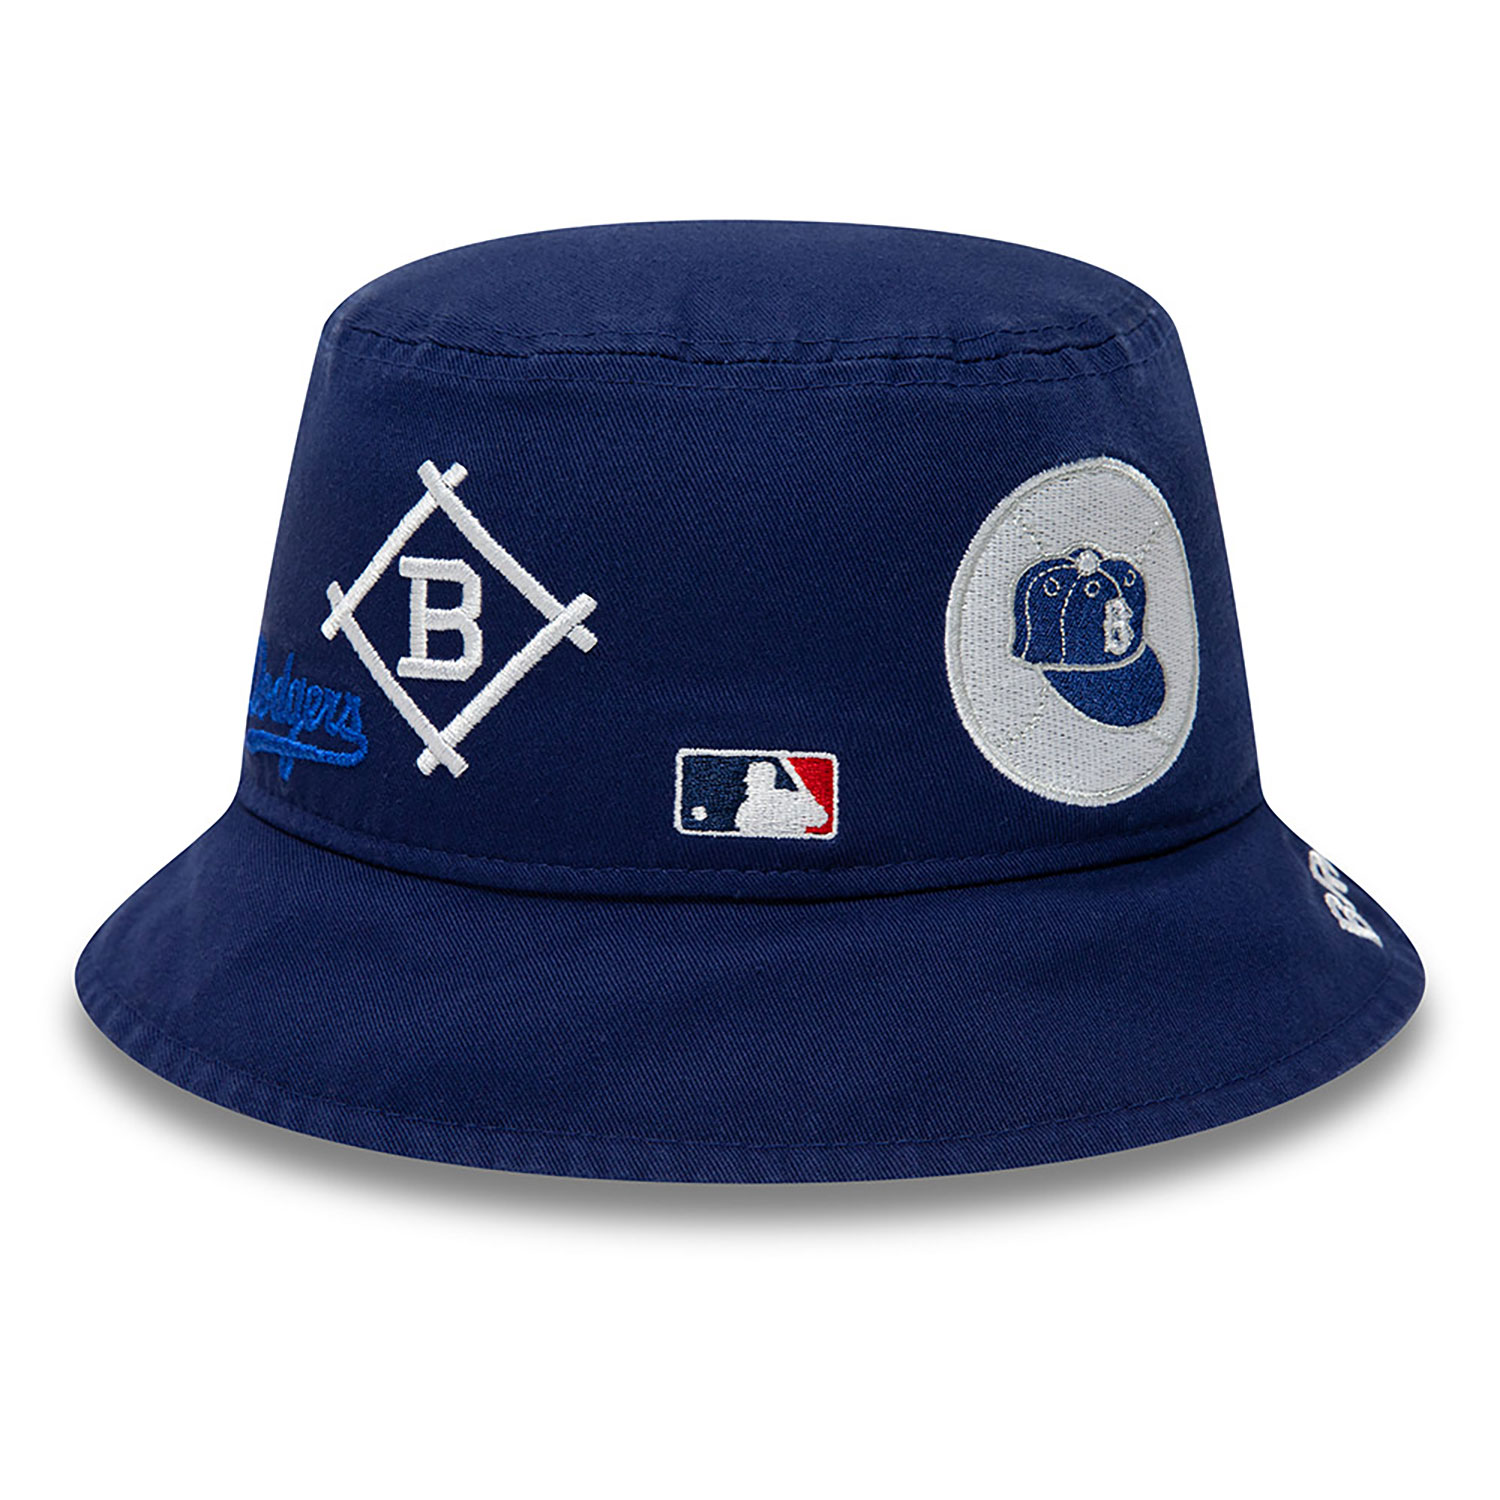 Brooklyn Dodgers Cooperstown Navy Bucket Hat